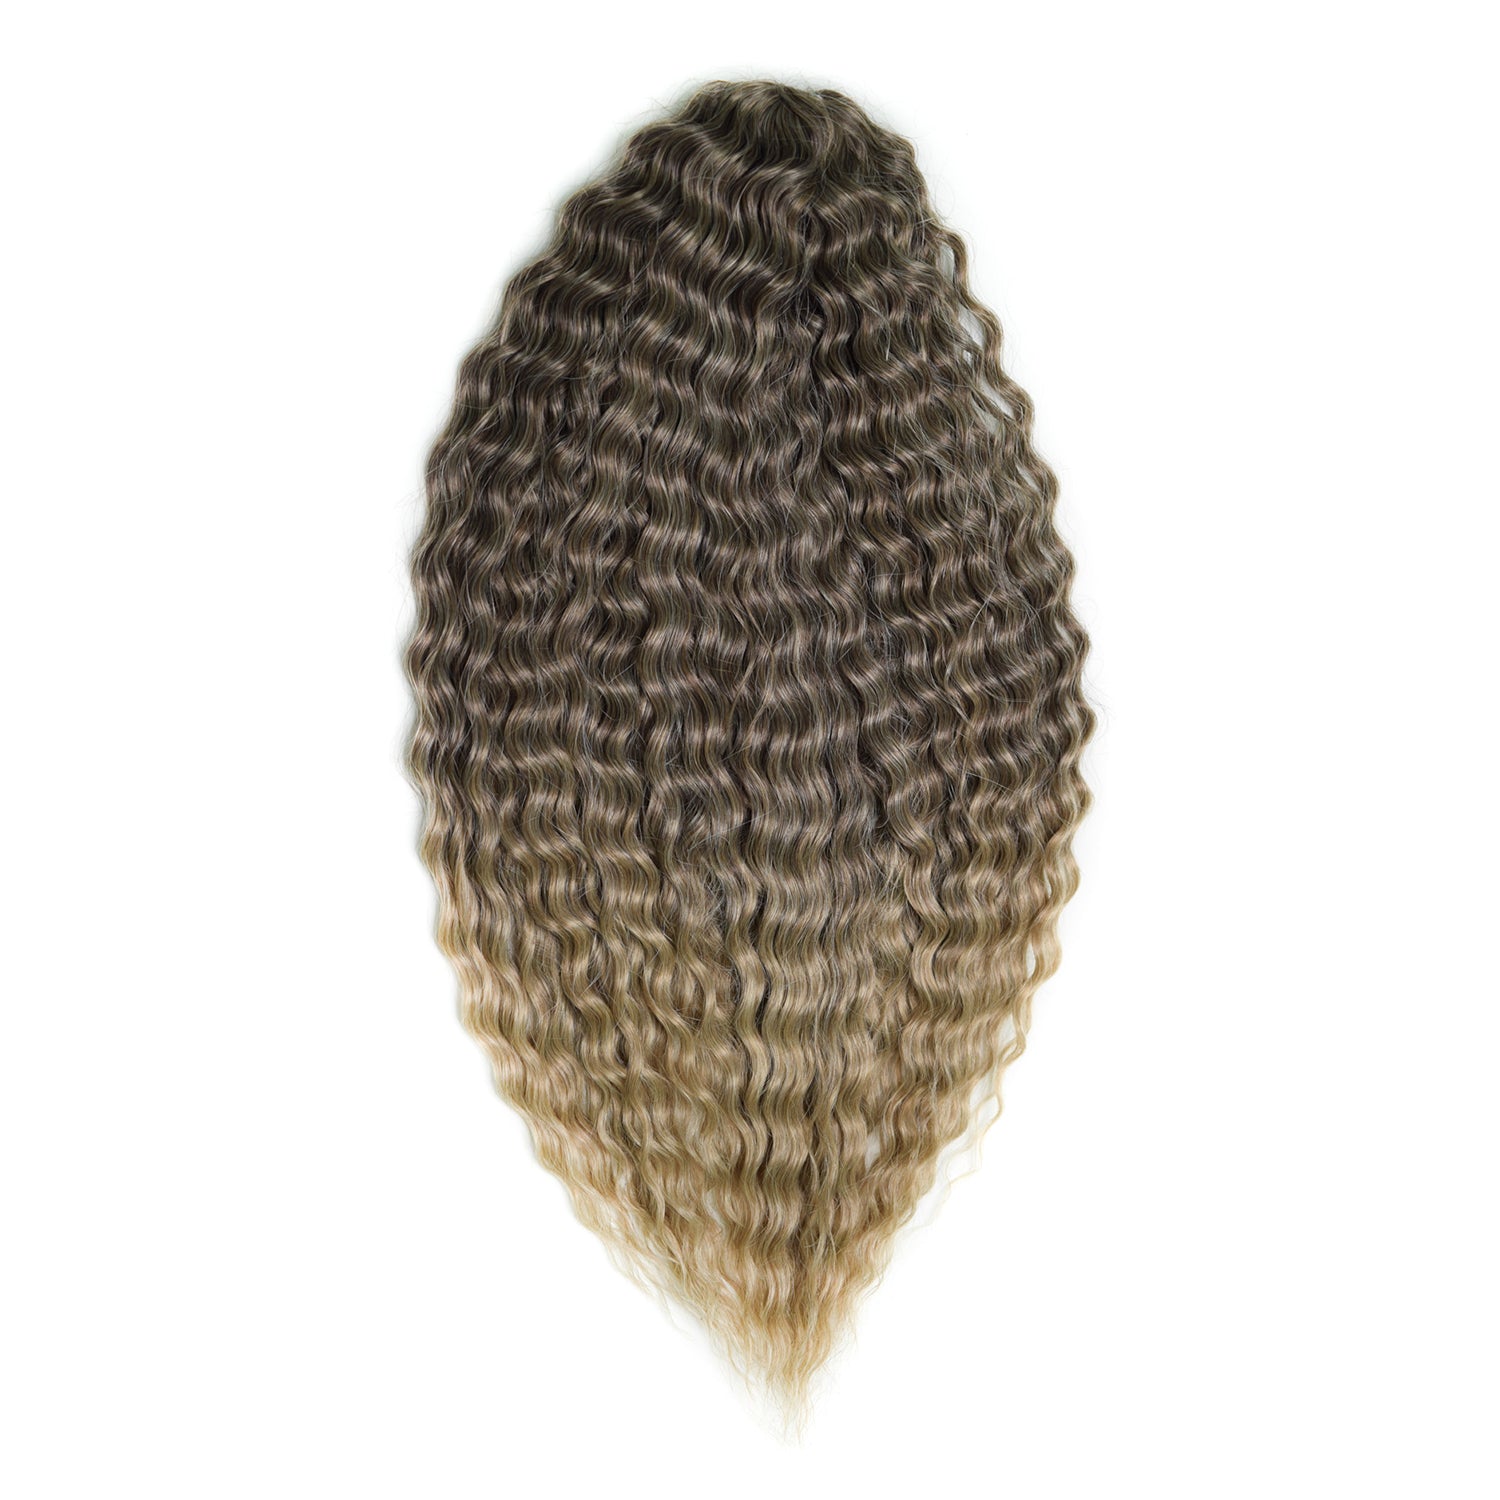 Афрокудри для плетения волос Ariel цвет T4 22 русый длина 55см вес 300г афрокудри для плетения волос ariel ариэль fire оранжевый длина 66см вес 300г